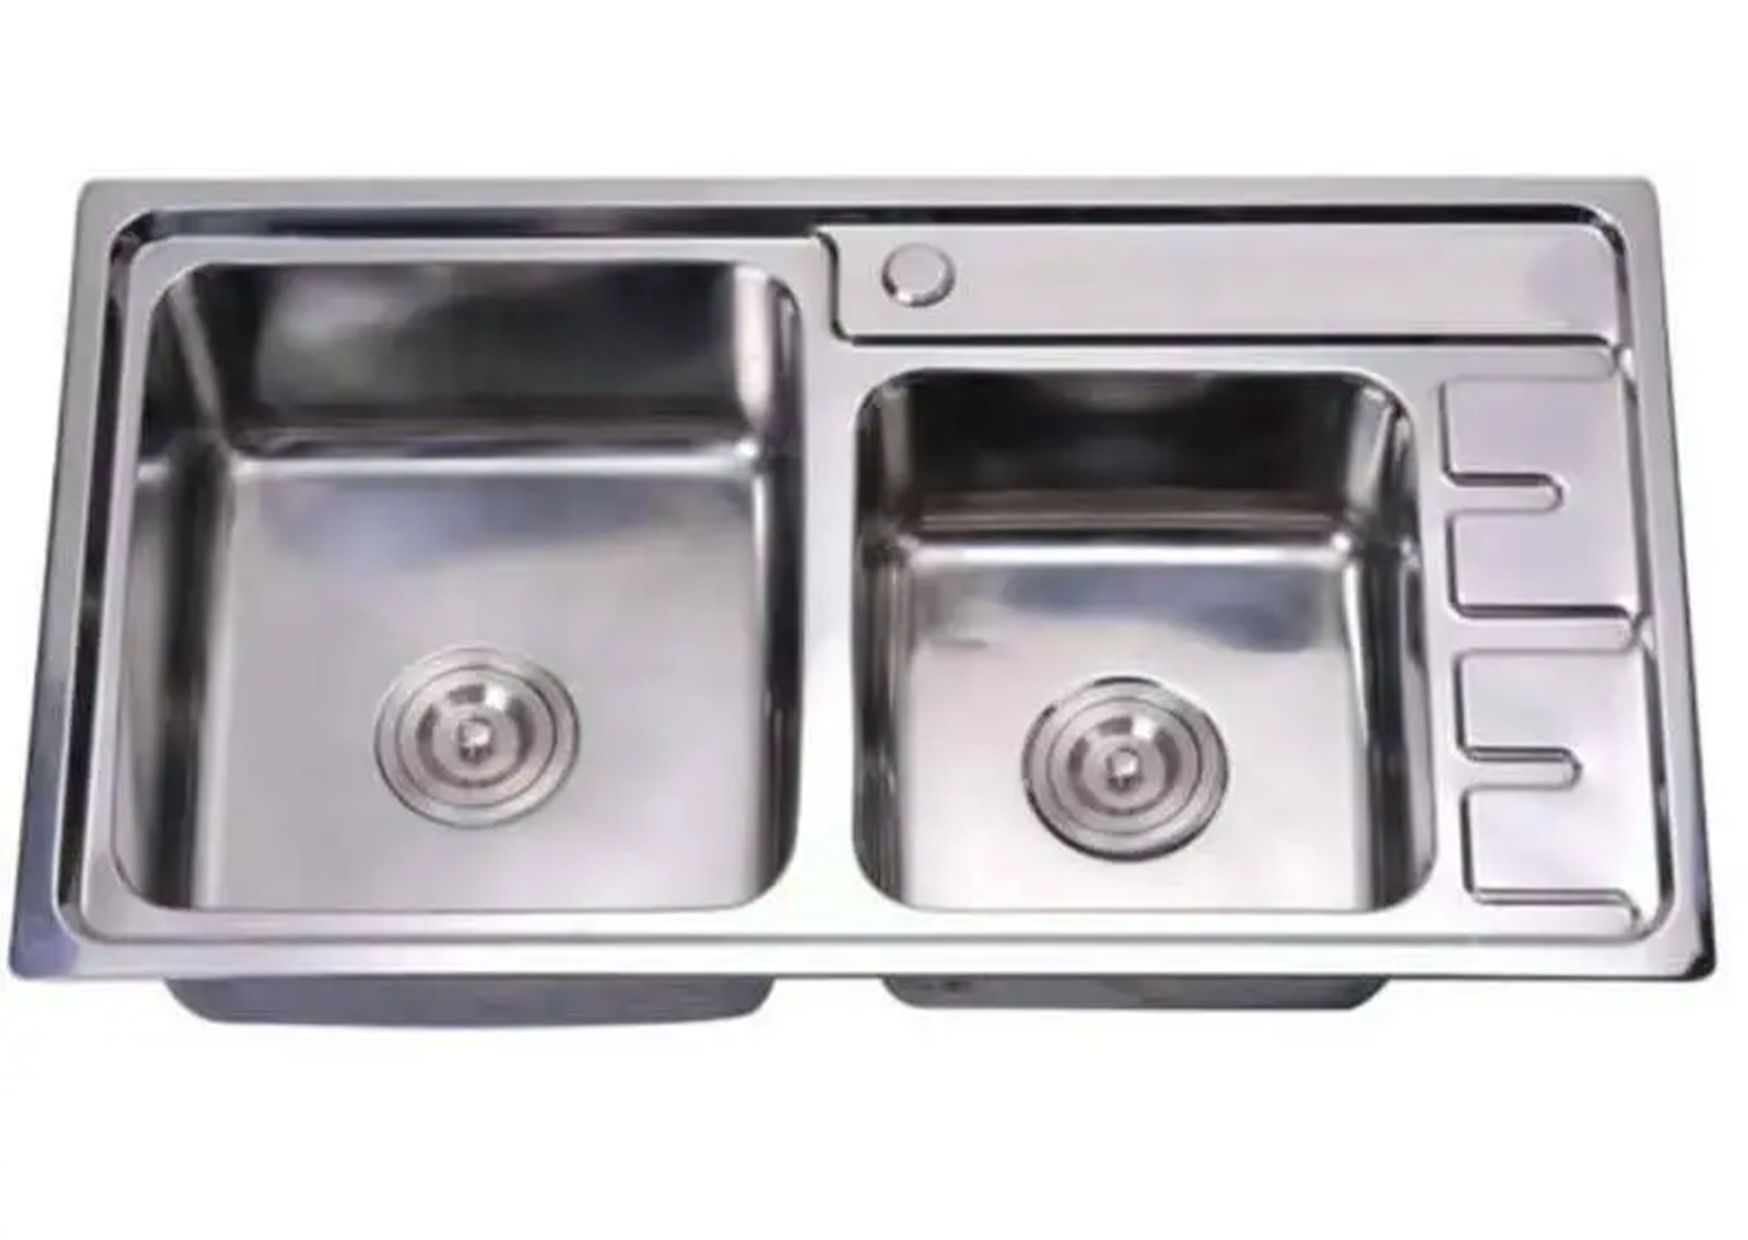 Sillago Proculo Double Bowl Steel Kitchen Sink